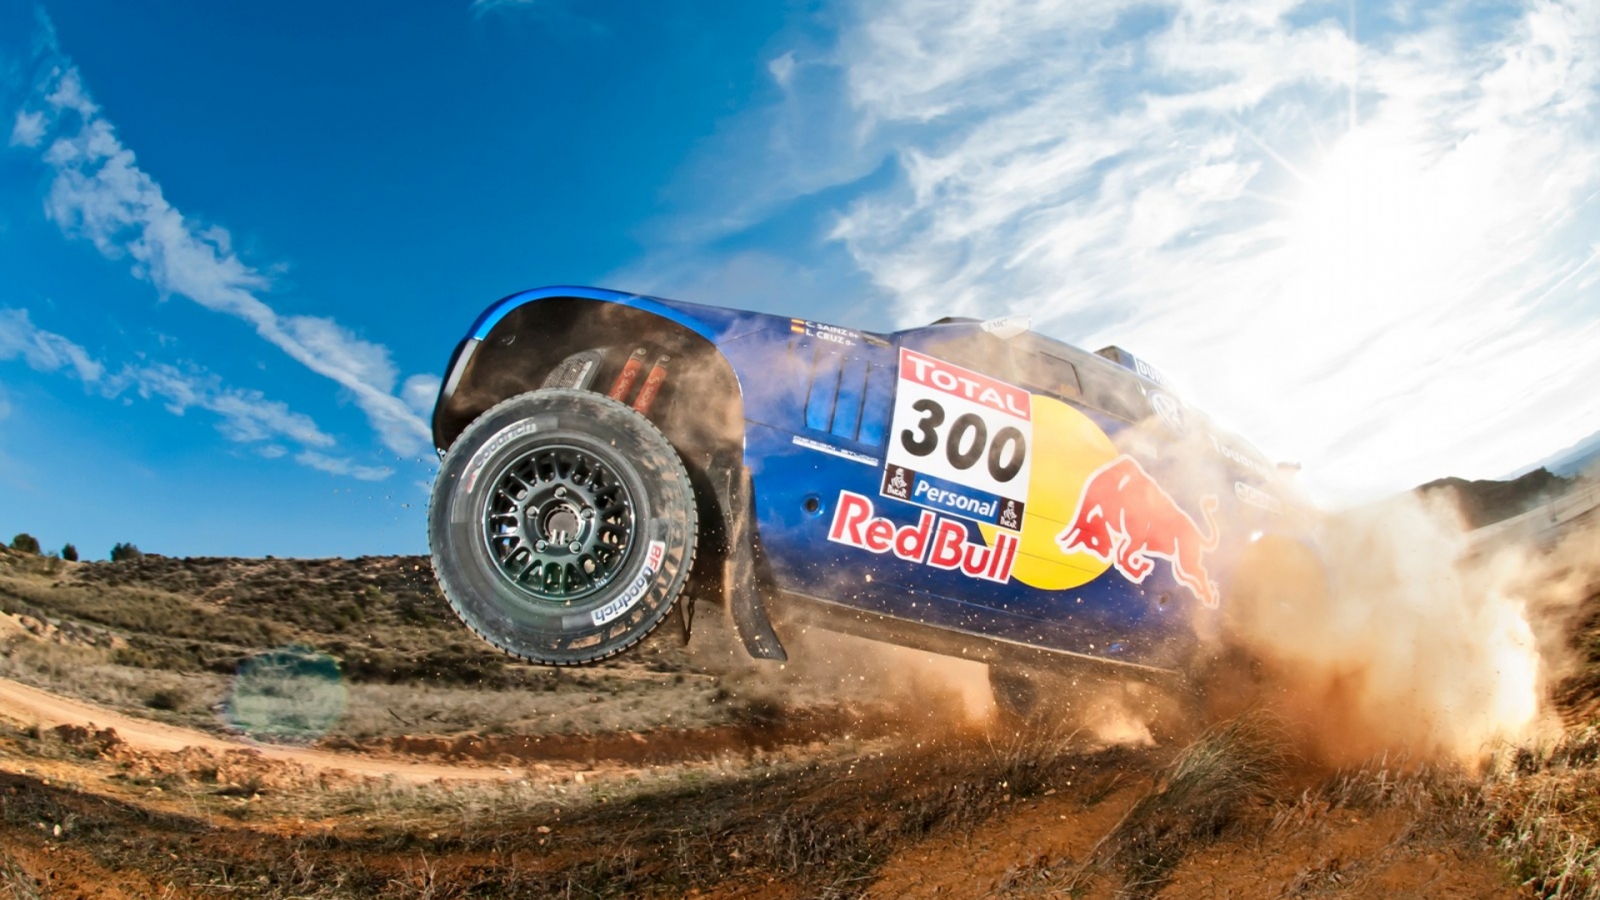 Volkswagen Dakar Race for 1600 x 900 HDTV resolution